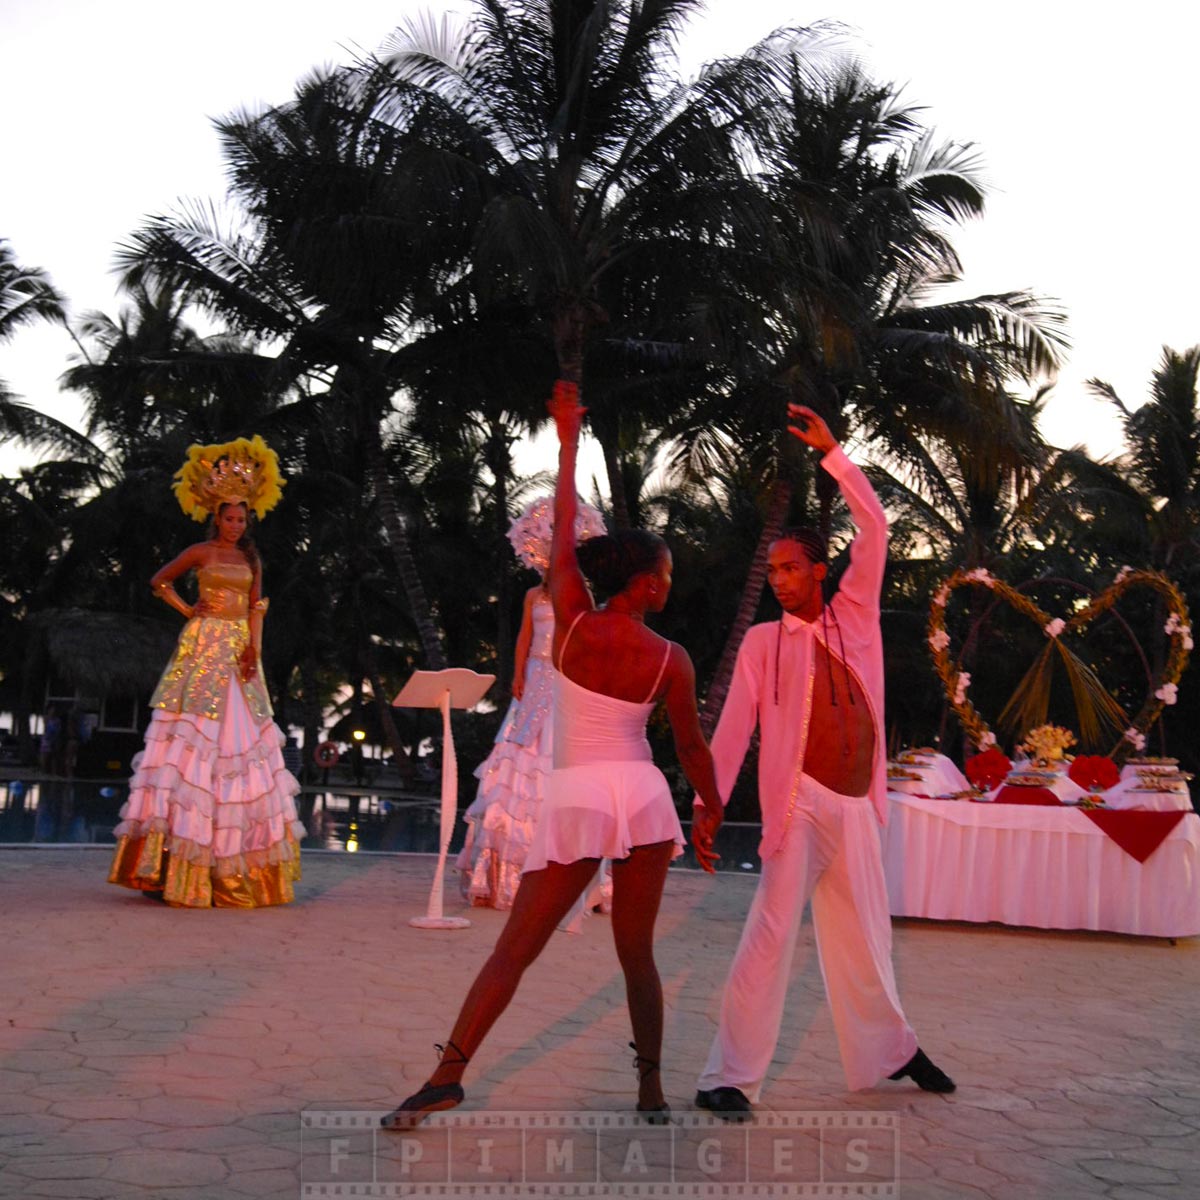 Dominican dancers performing romantic dance